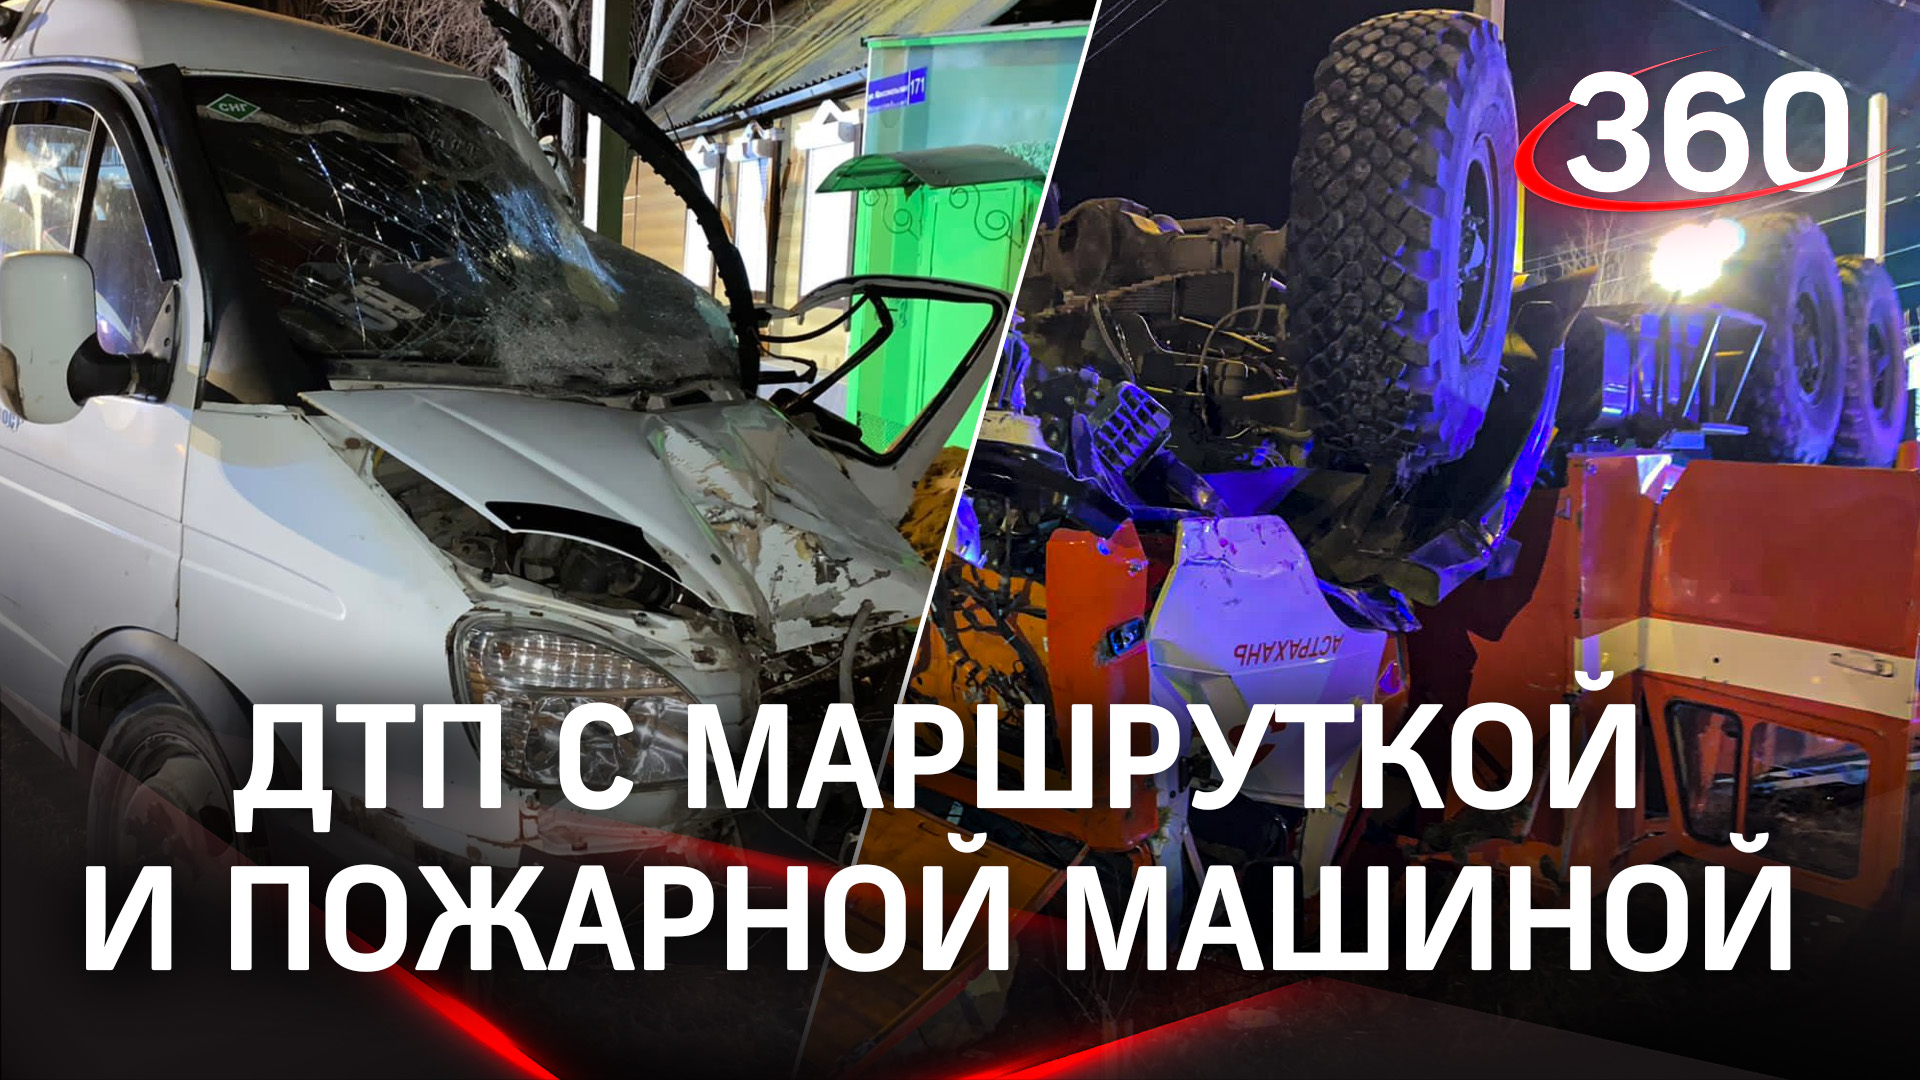 Авария на перекрёстке: маршрутка столкнулась с пожарной машиной в Астрахани, есть погибшие